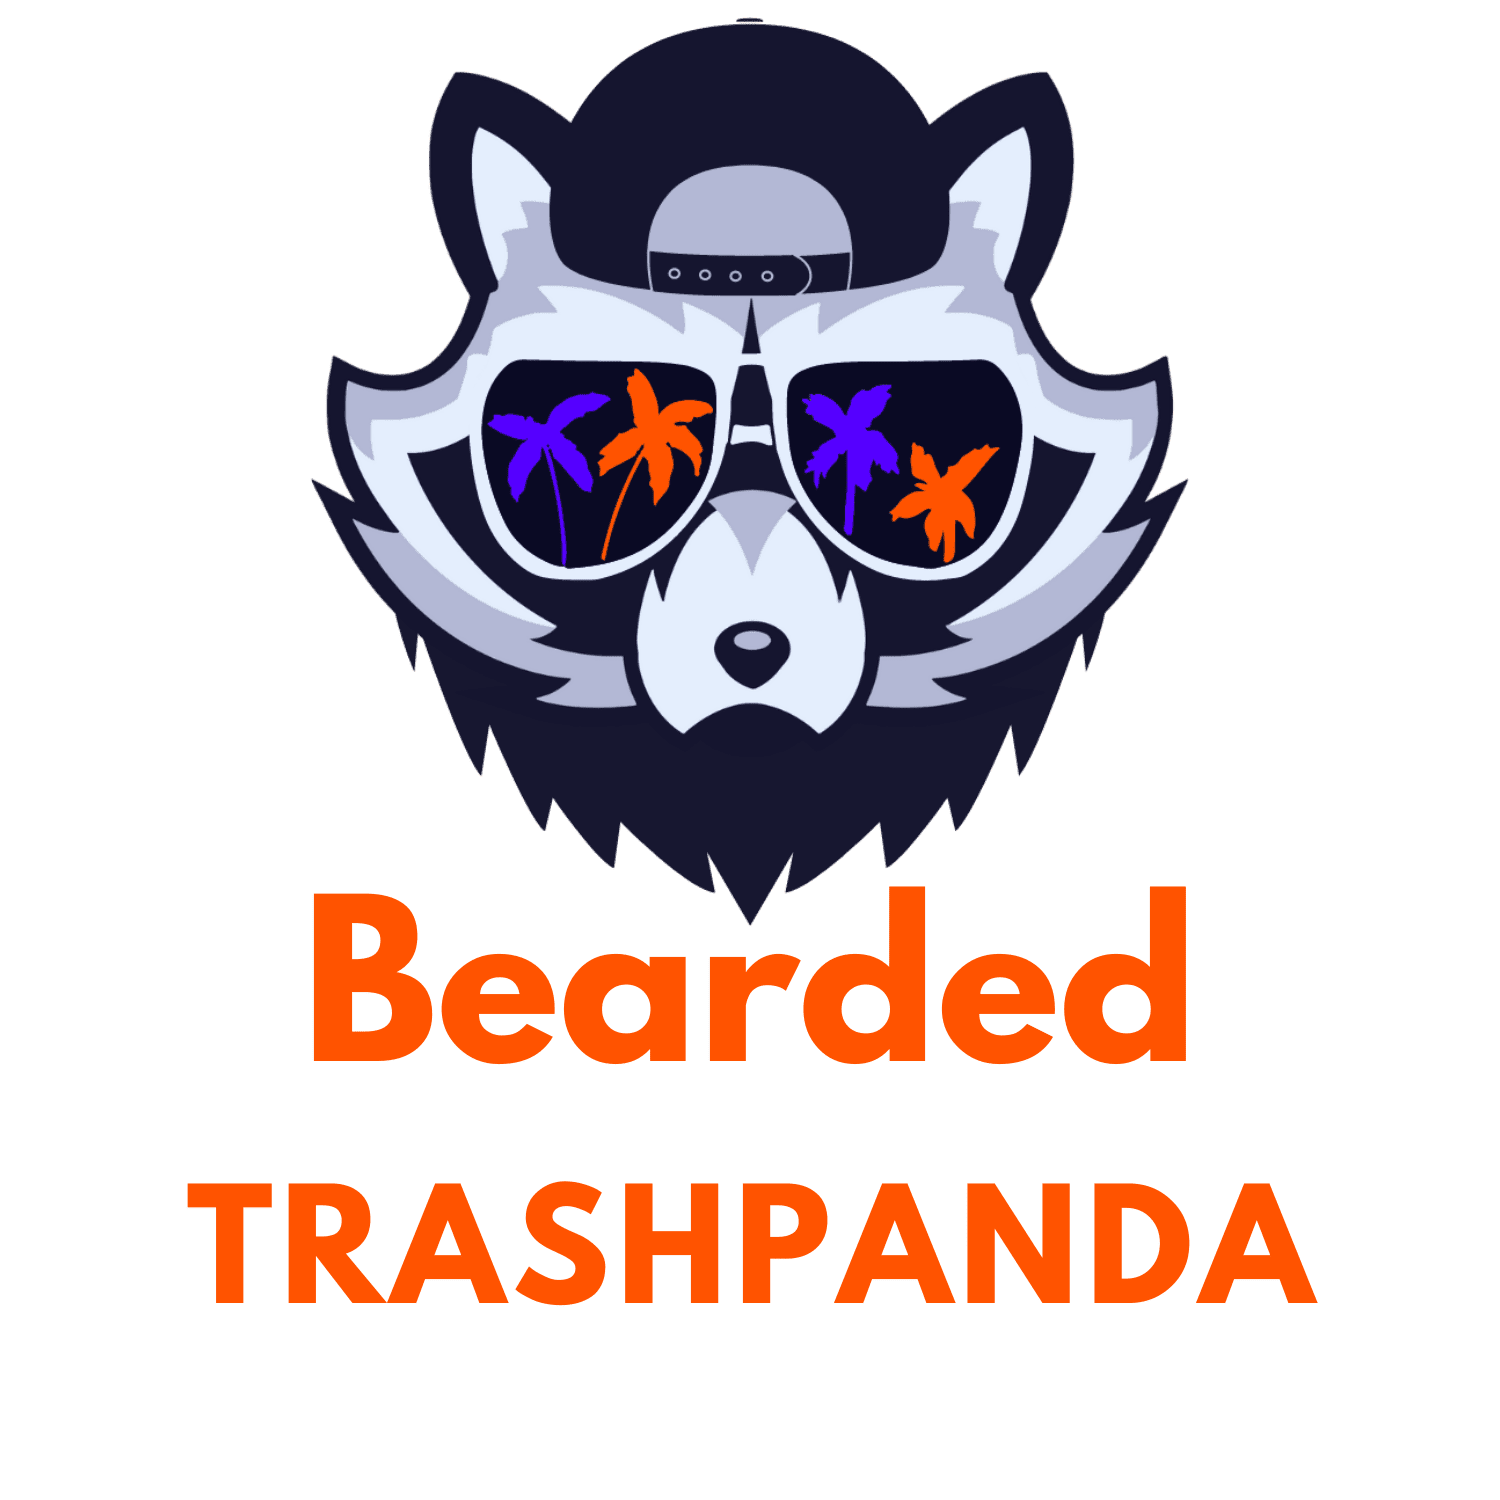 Bearded Trash Panda